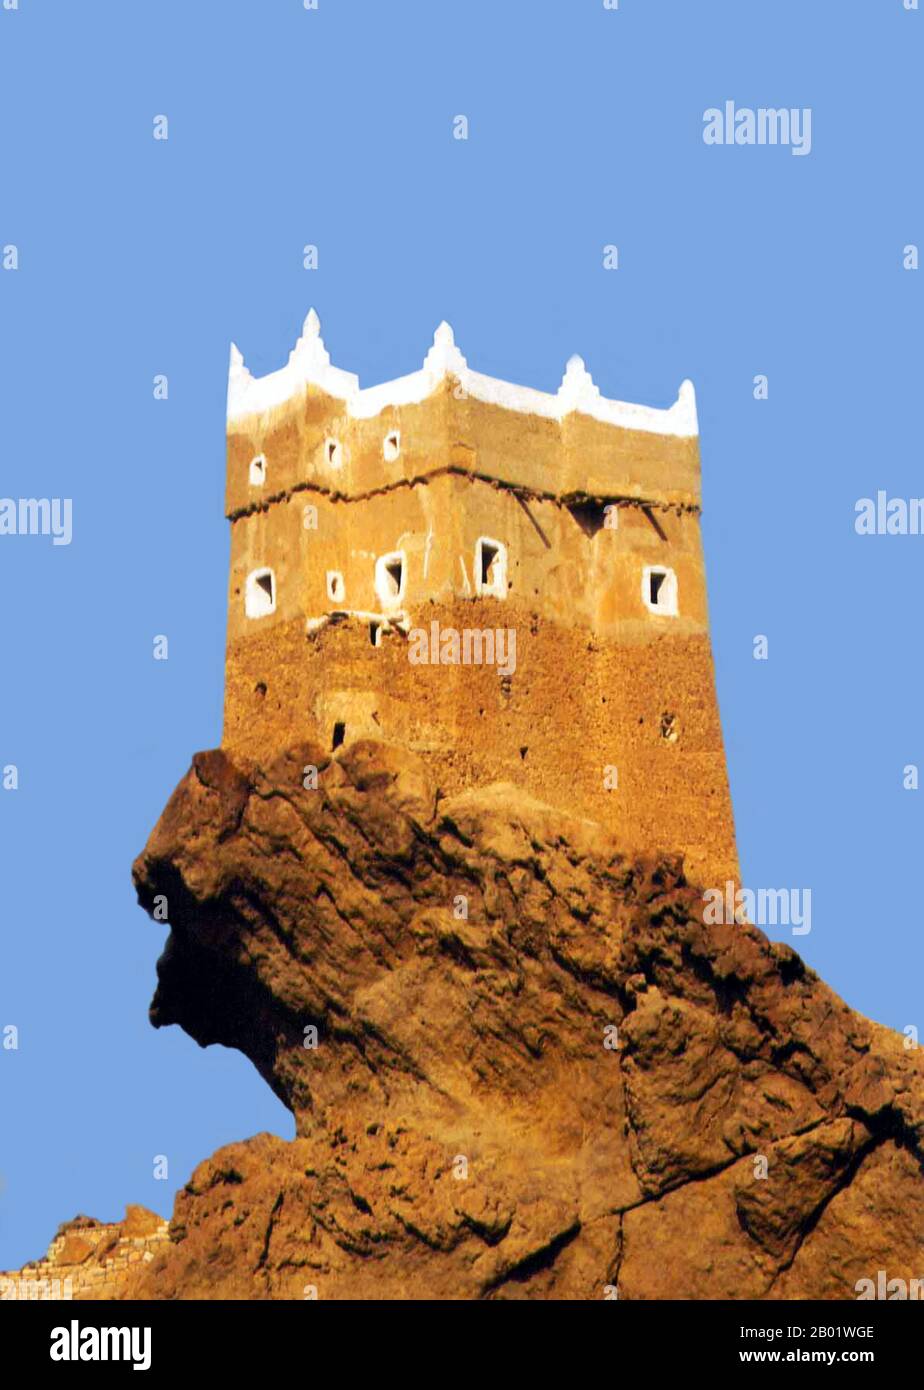 Jemen: Al-Ghowaizi Fort, Mukalla, Hadramawt. Ein befestigter Turm in seiner heutigen Form aus der Ghaithi-Zeit, Ende des 19. Jahrhunderts. Al-Ghowaizi Fort, Turm oder Burg (Husn Al-Alghwayzi) befindet sich am westlichen Stadtrand von Al Mukalla (Al Mukallā), dem Haupthafen und der Hauptstadt der Hadramaut-Küstenregion Jemen im südlichen Teil Arabiens am Golf von Aden in der Nähe des Arabischen Meeres. Er liegt 480 km (300 mi) östlich von Aden und ist der wichtigste Hafen im Gouvernement Hadramaut, dem größten Gouvernement Südarabiens. Stockfoto